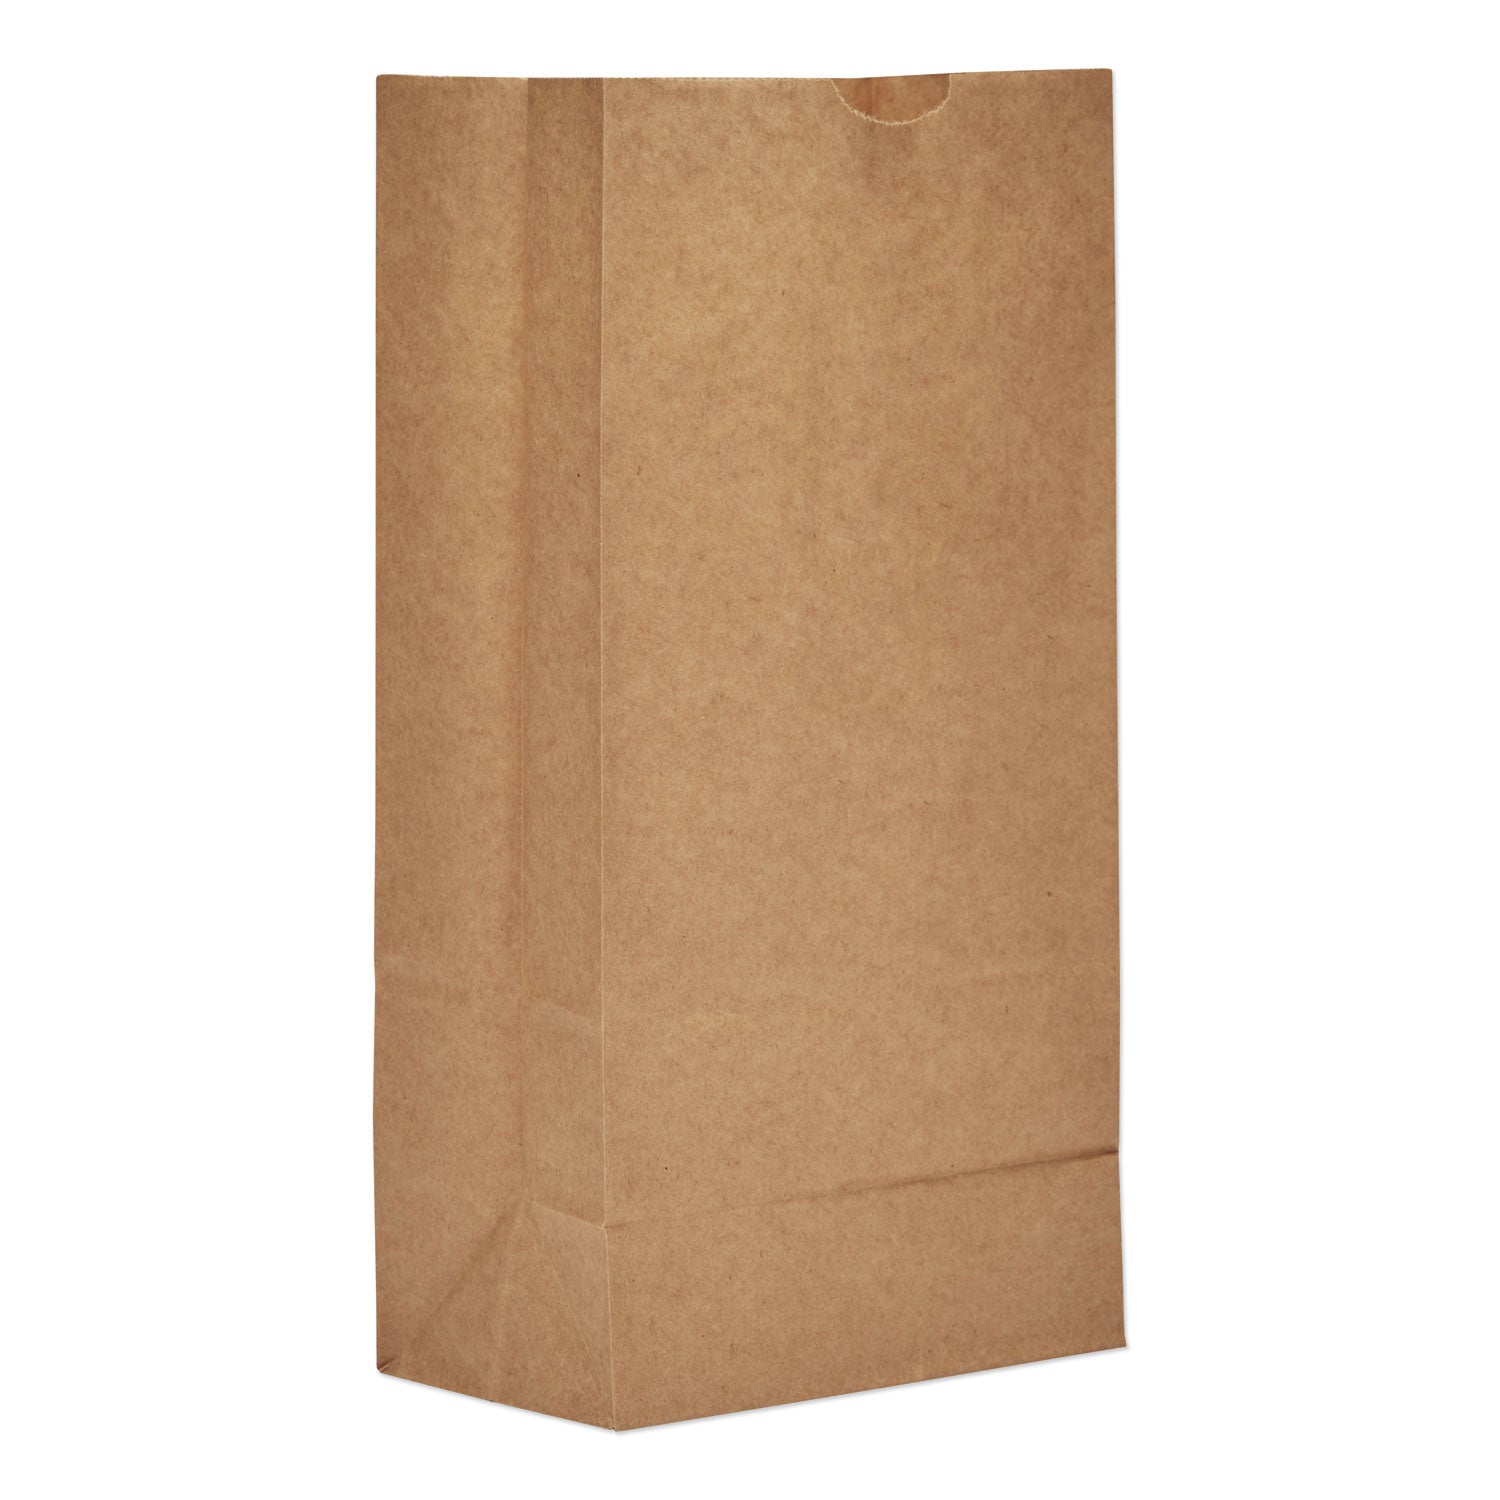 grocery-paper-bags-57-lb-capacity-#8-613-x-417-x-1244-kraft-500-bags_baggx8500 - 1